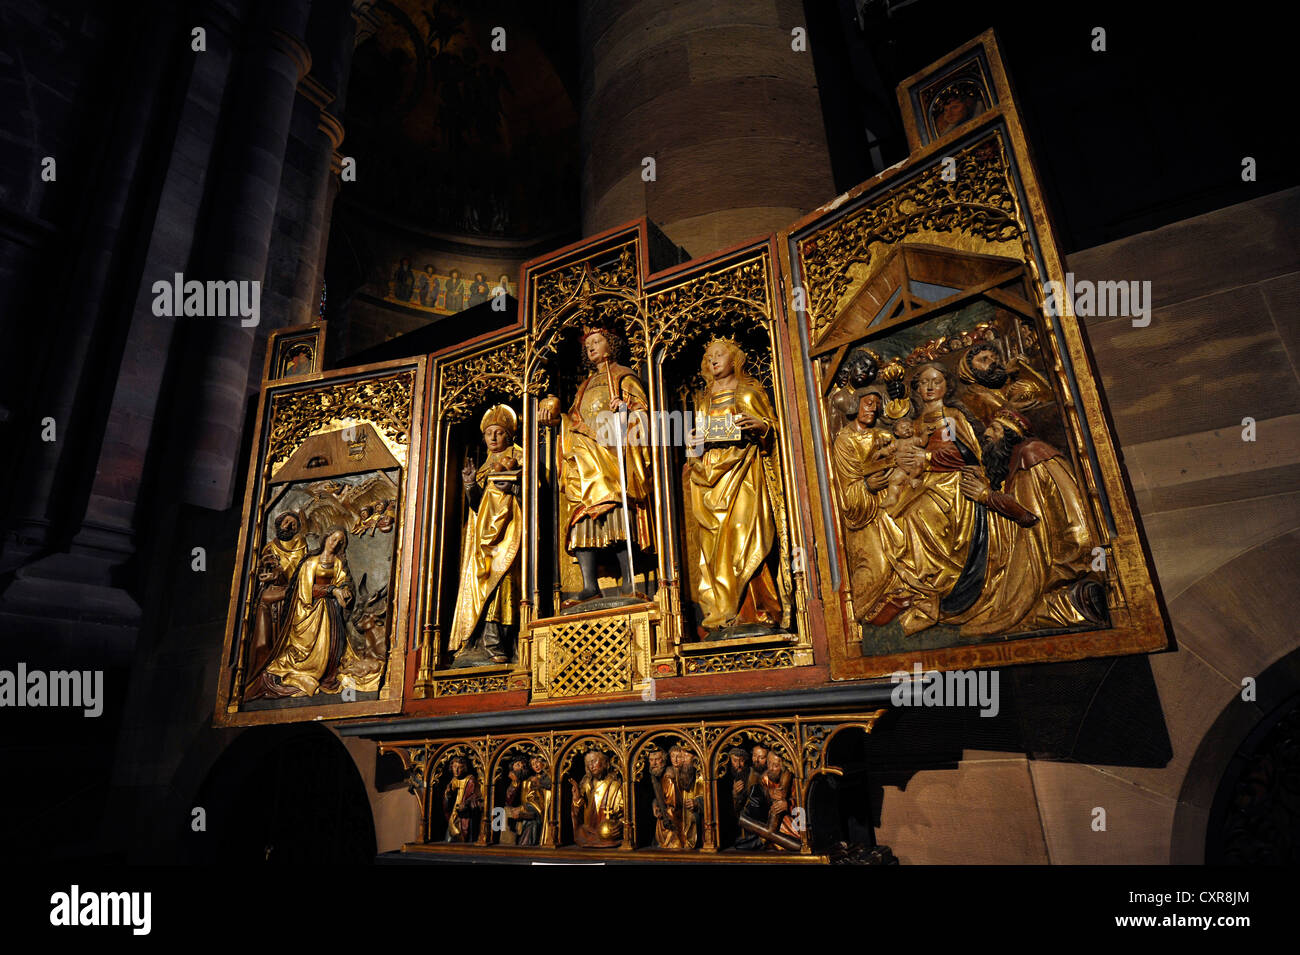 Culte des saints, St Nicolas, St Pancrace et St Catherine, vue de l'intérieur de la cathédrale de Strasbourg, la cathédrale de Notre Dame de Banque D'Images